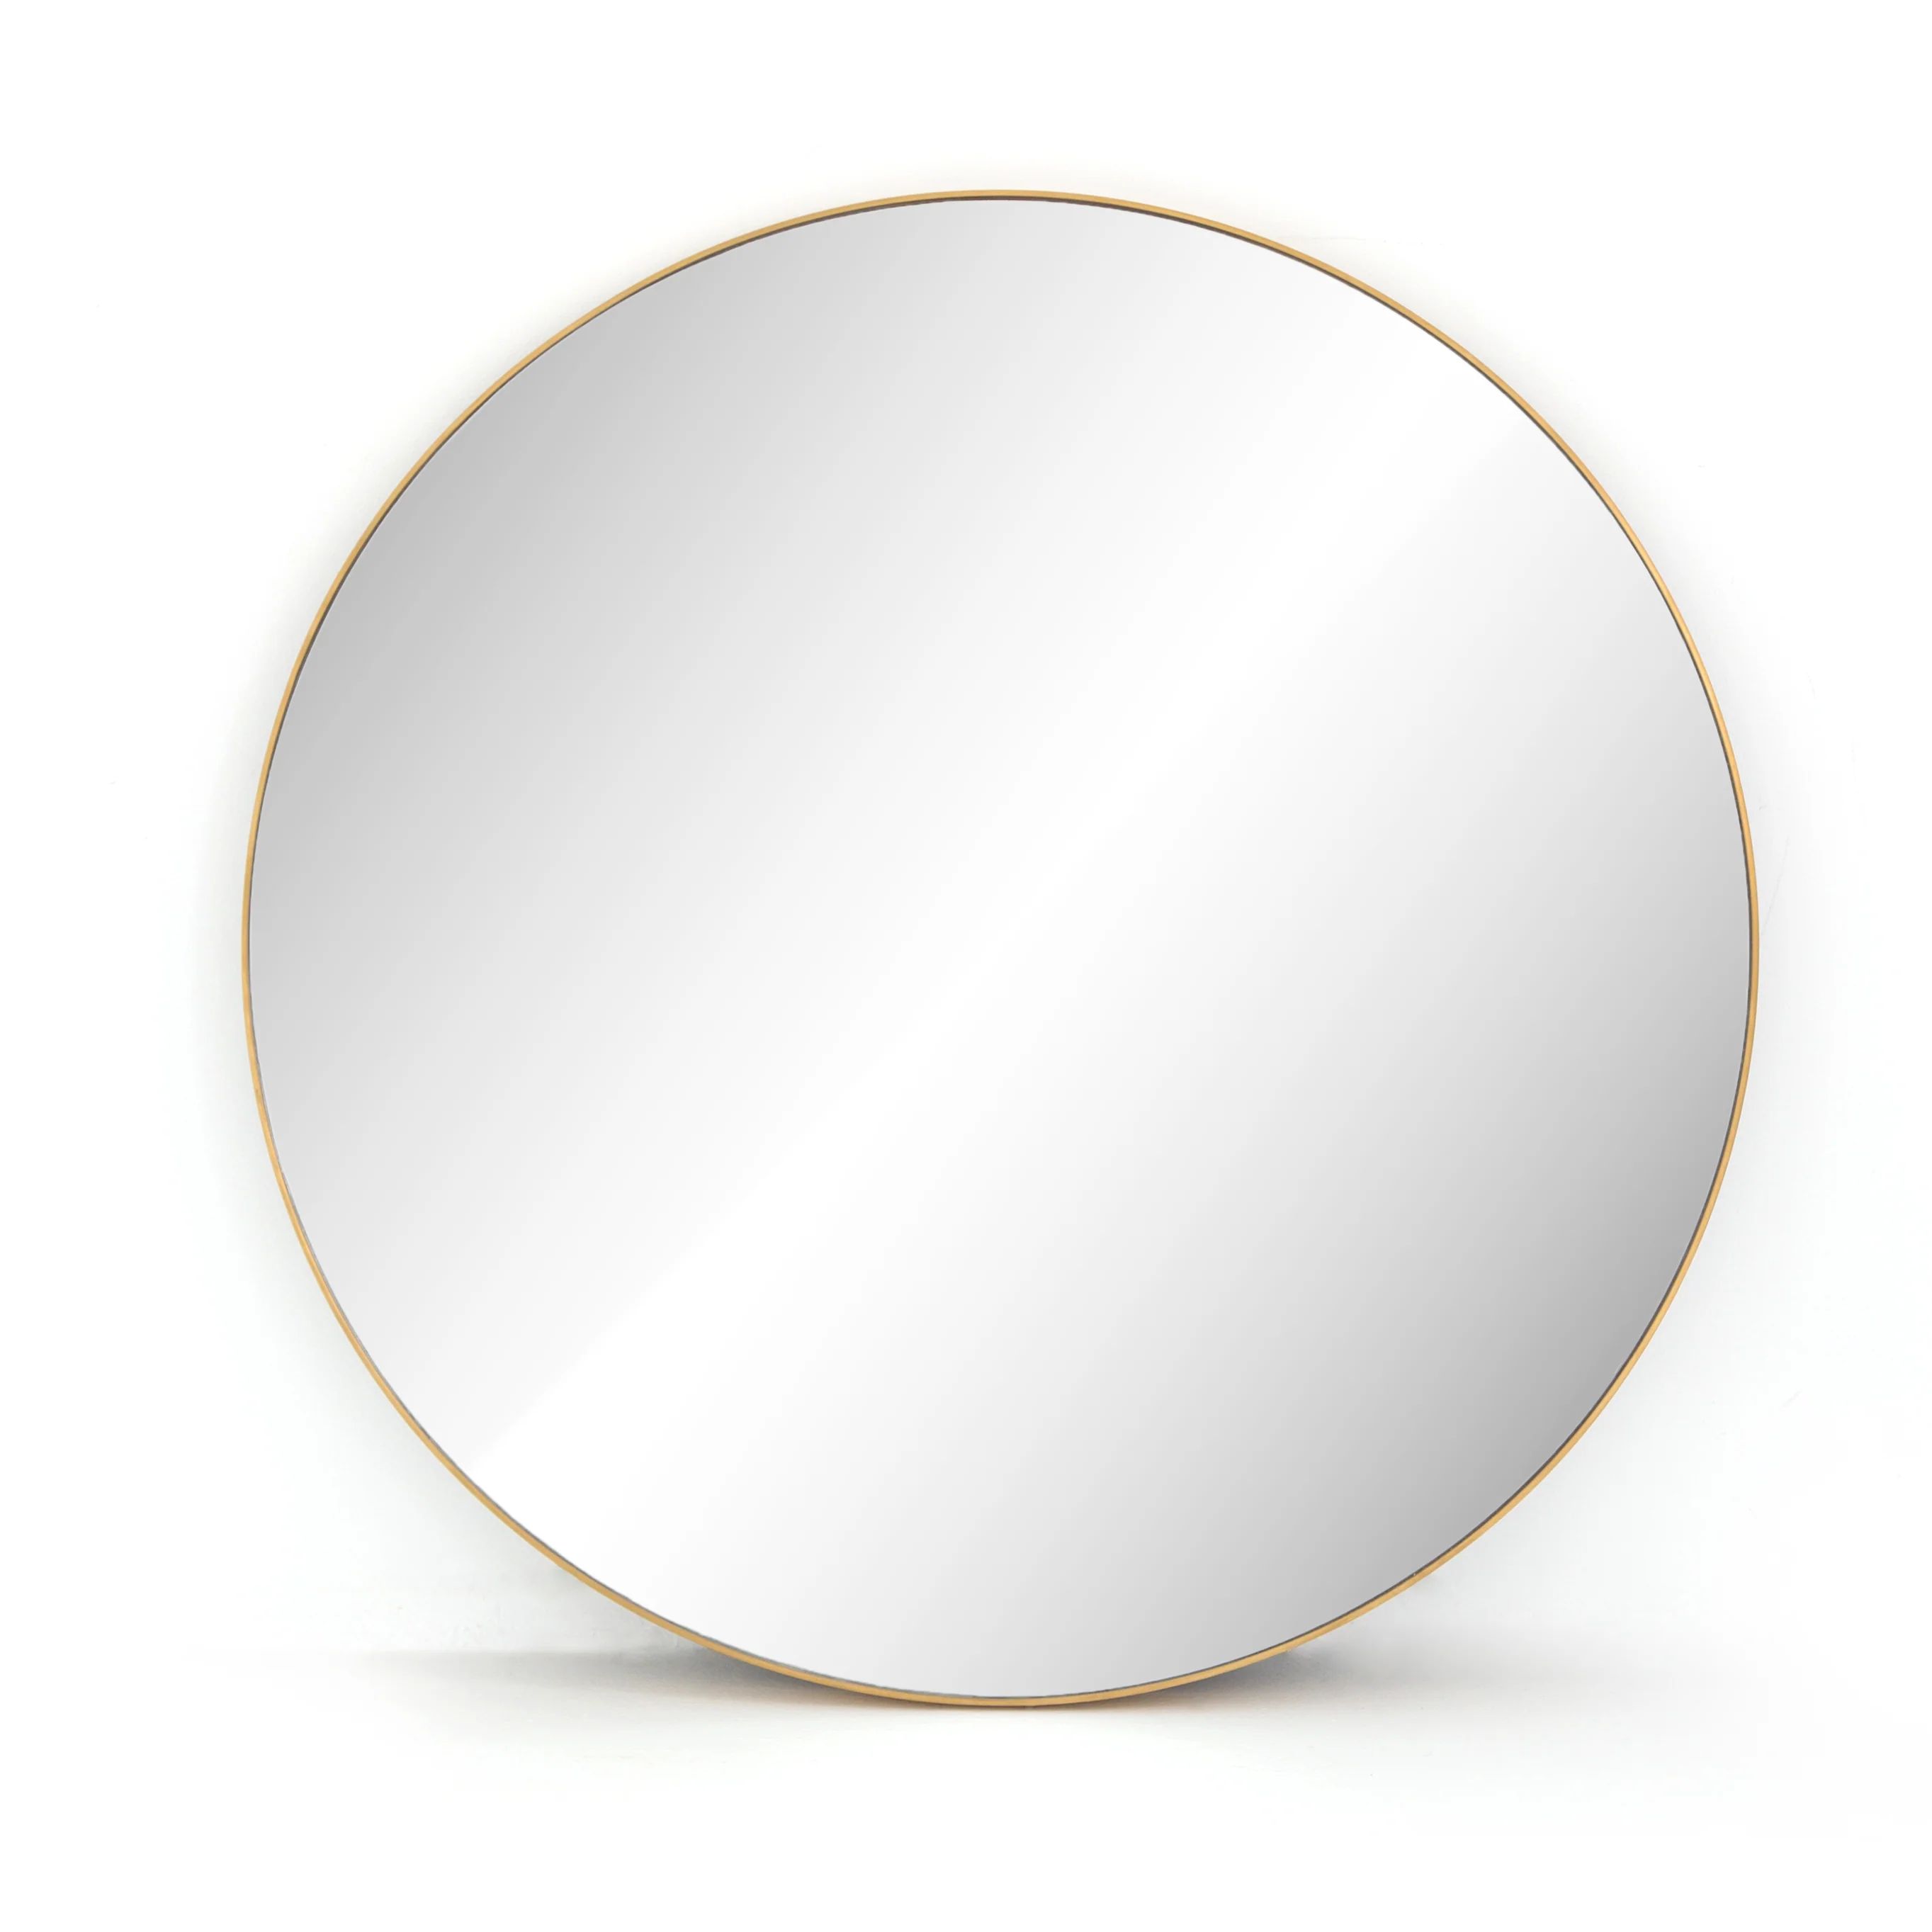 Bellvue Round Mirror in Polished Brass – BURKE DECOR | Burke Decor